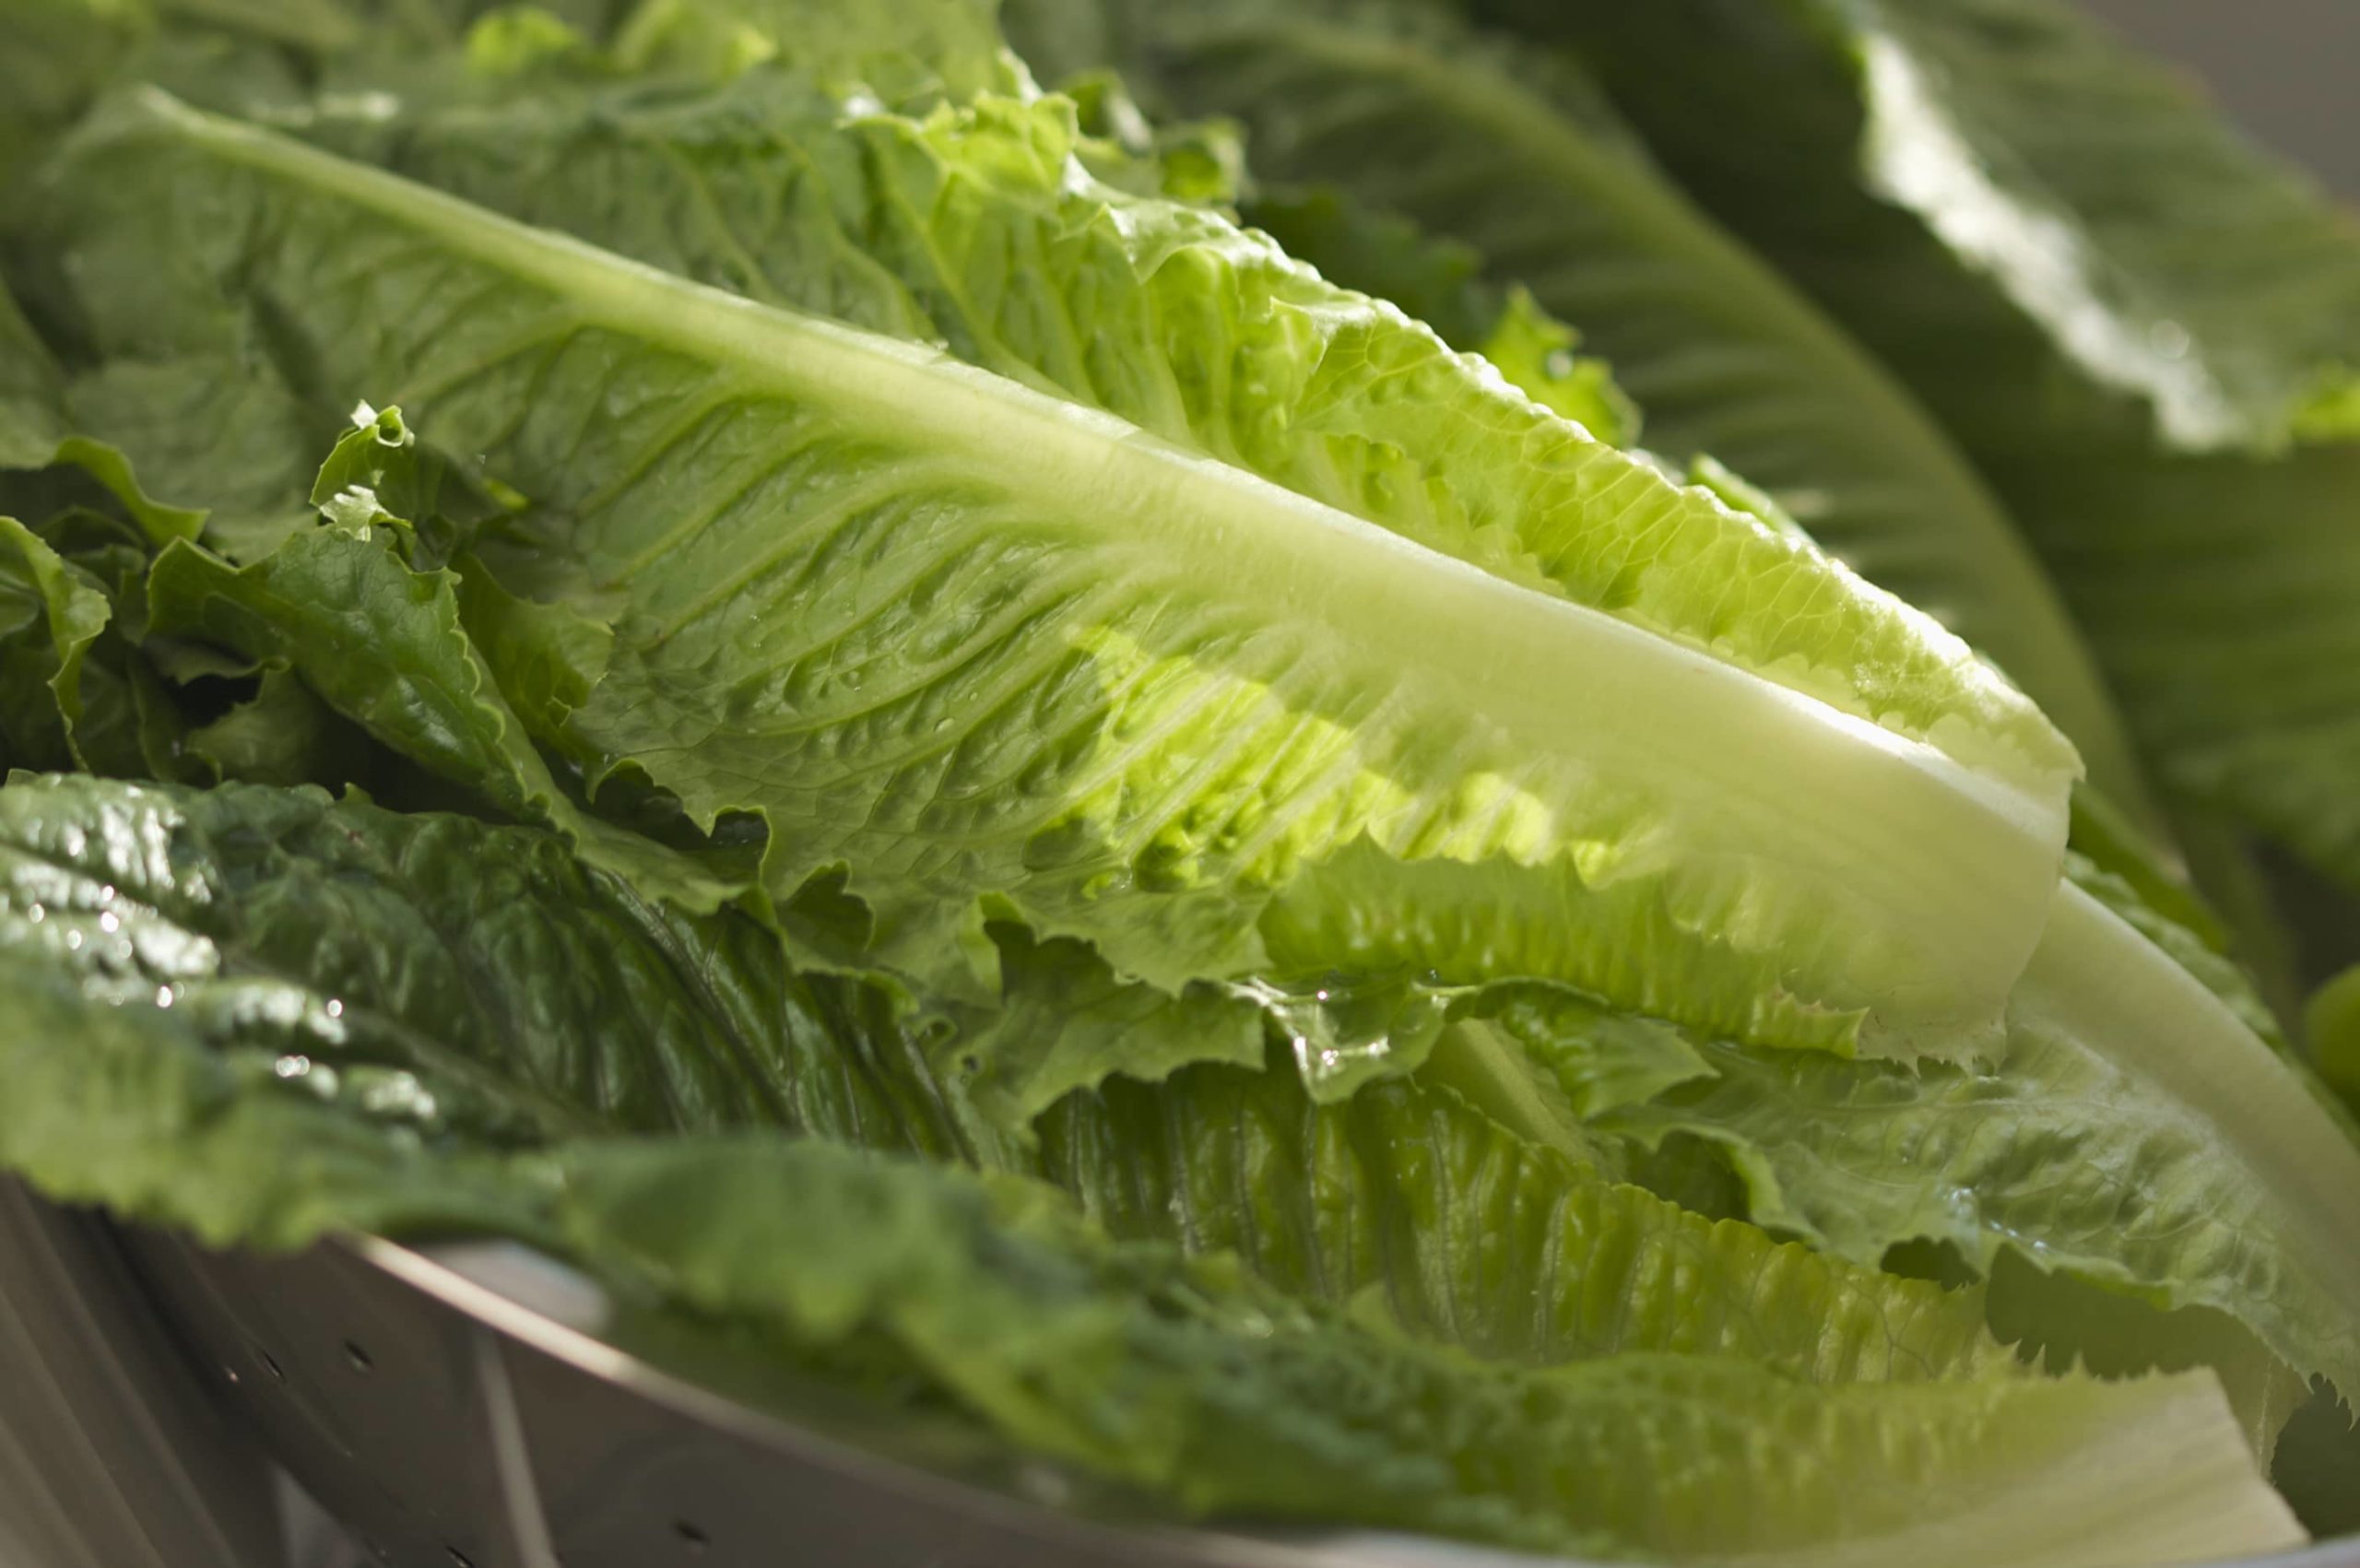 California Company Recalls Romaine Lettuce for Possible E. coli Contamination